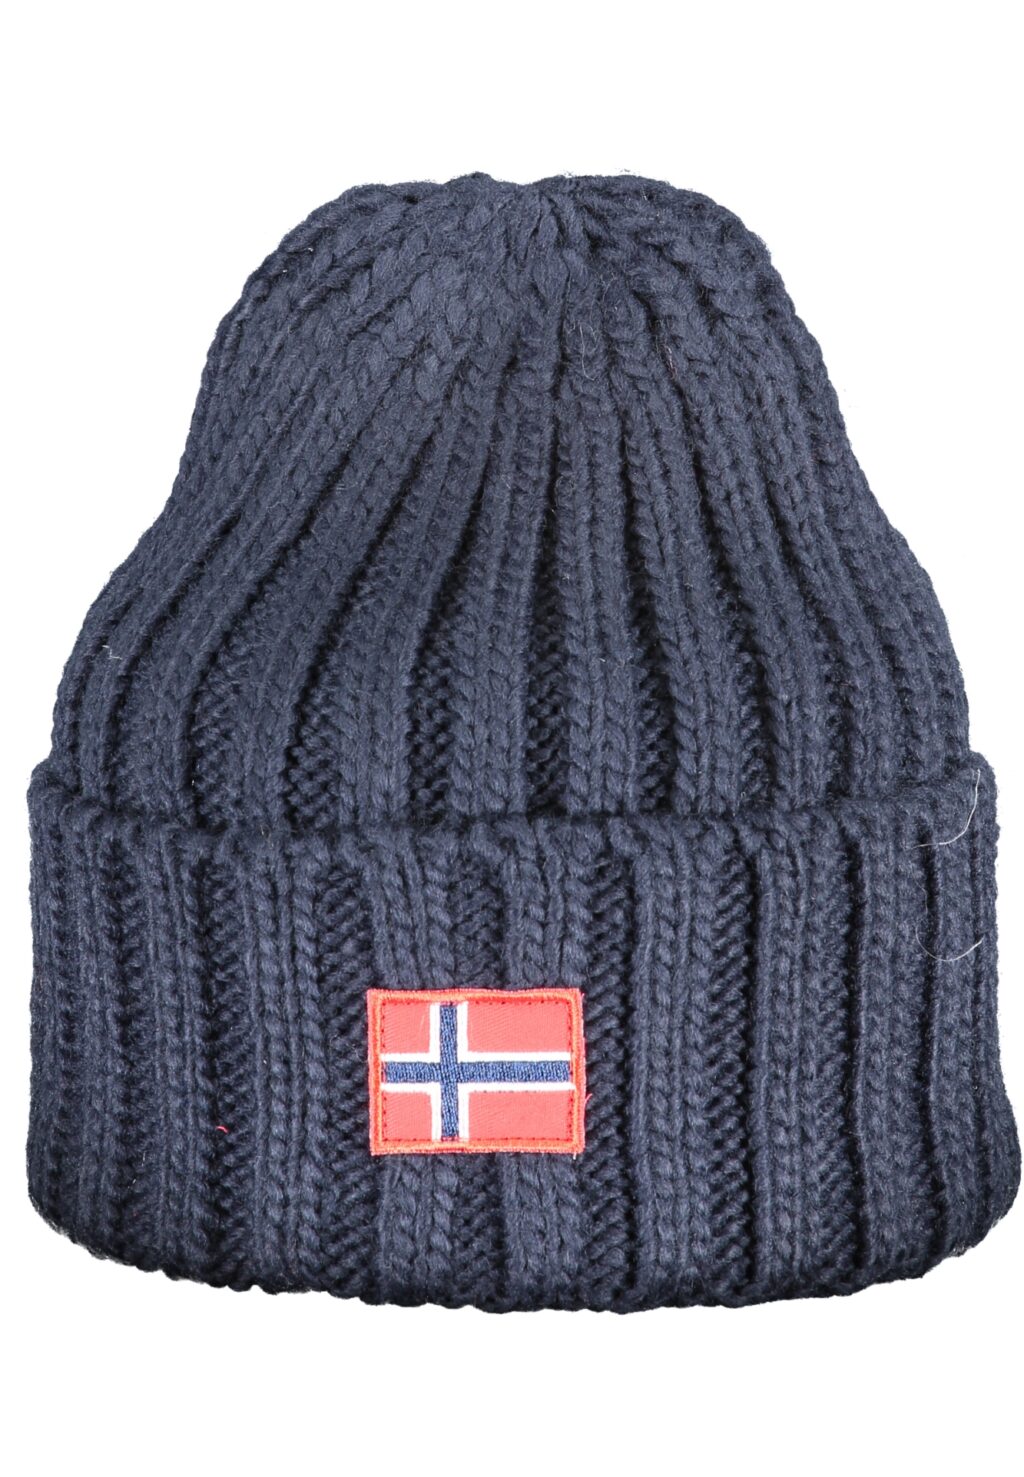 NORWAY 1963 BLUE MEN'S CAP 130103_BLNAVY